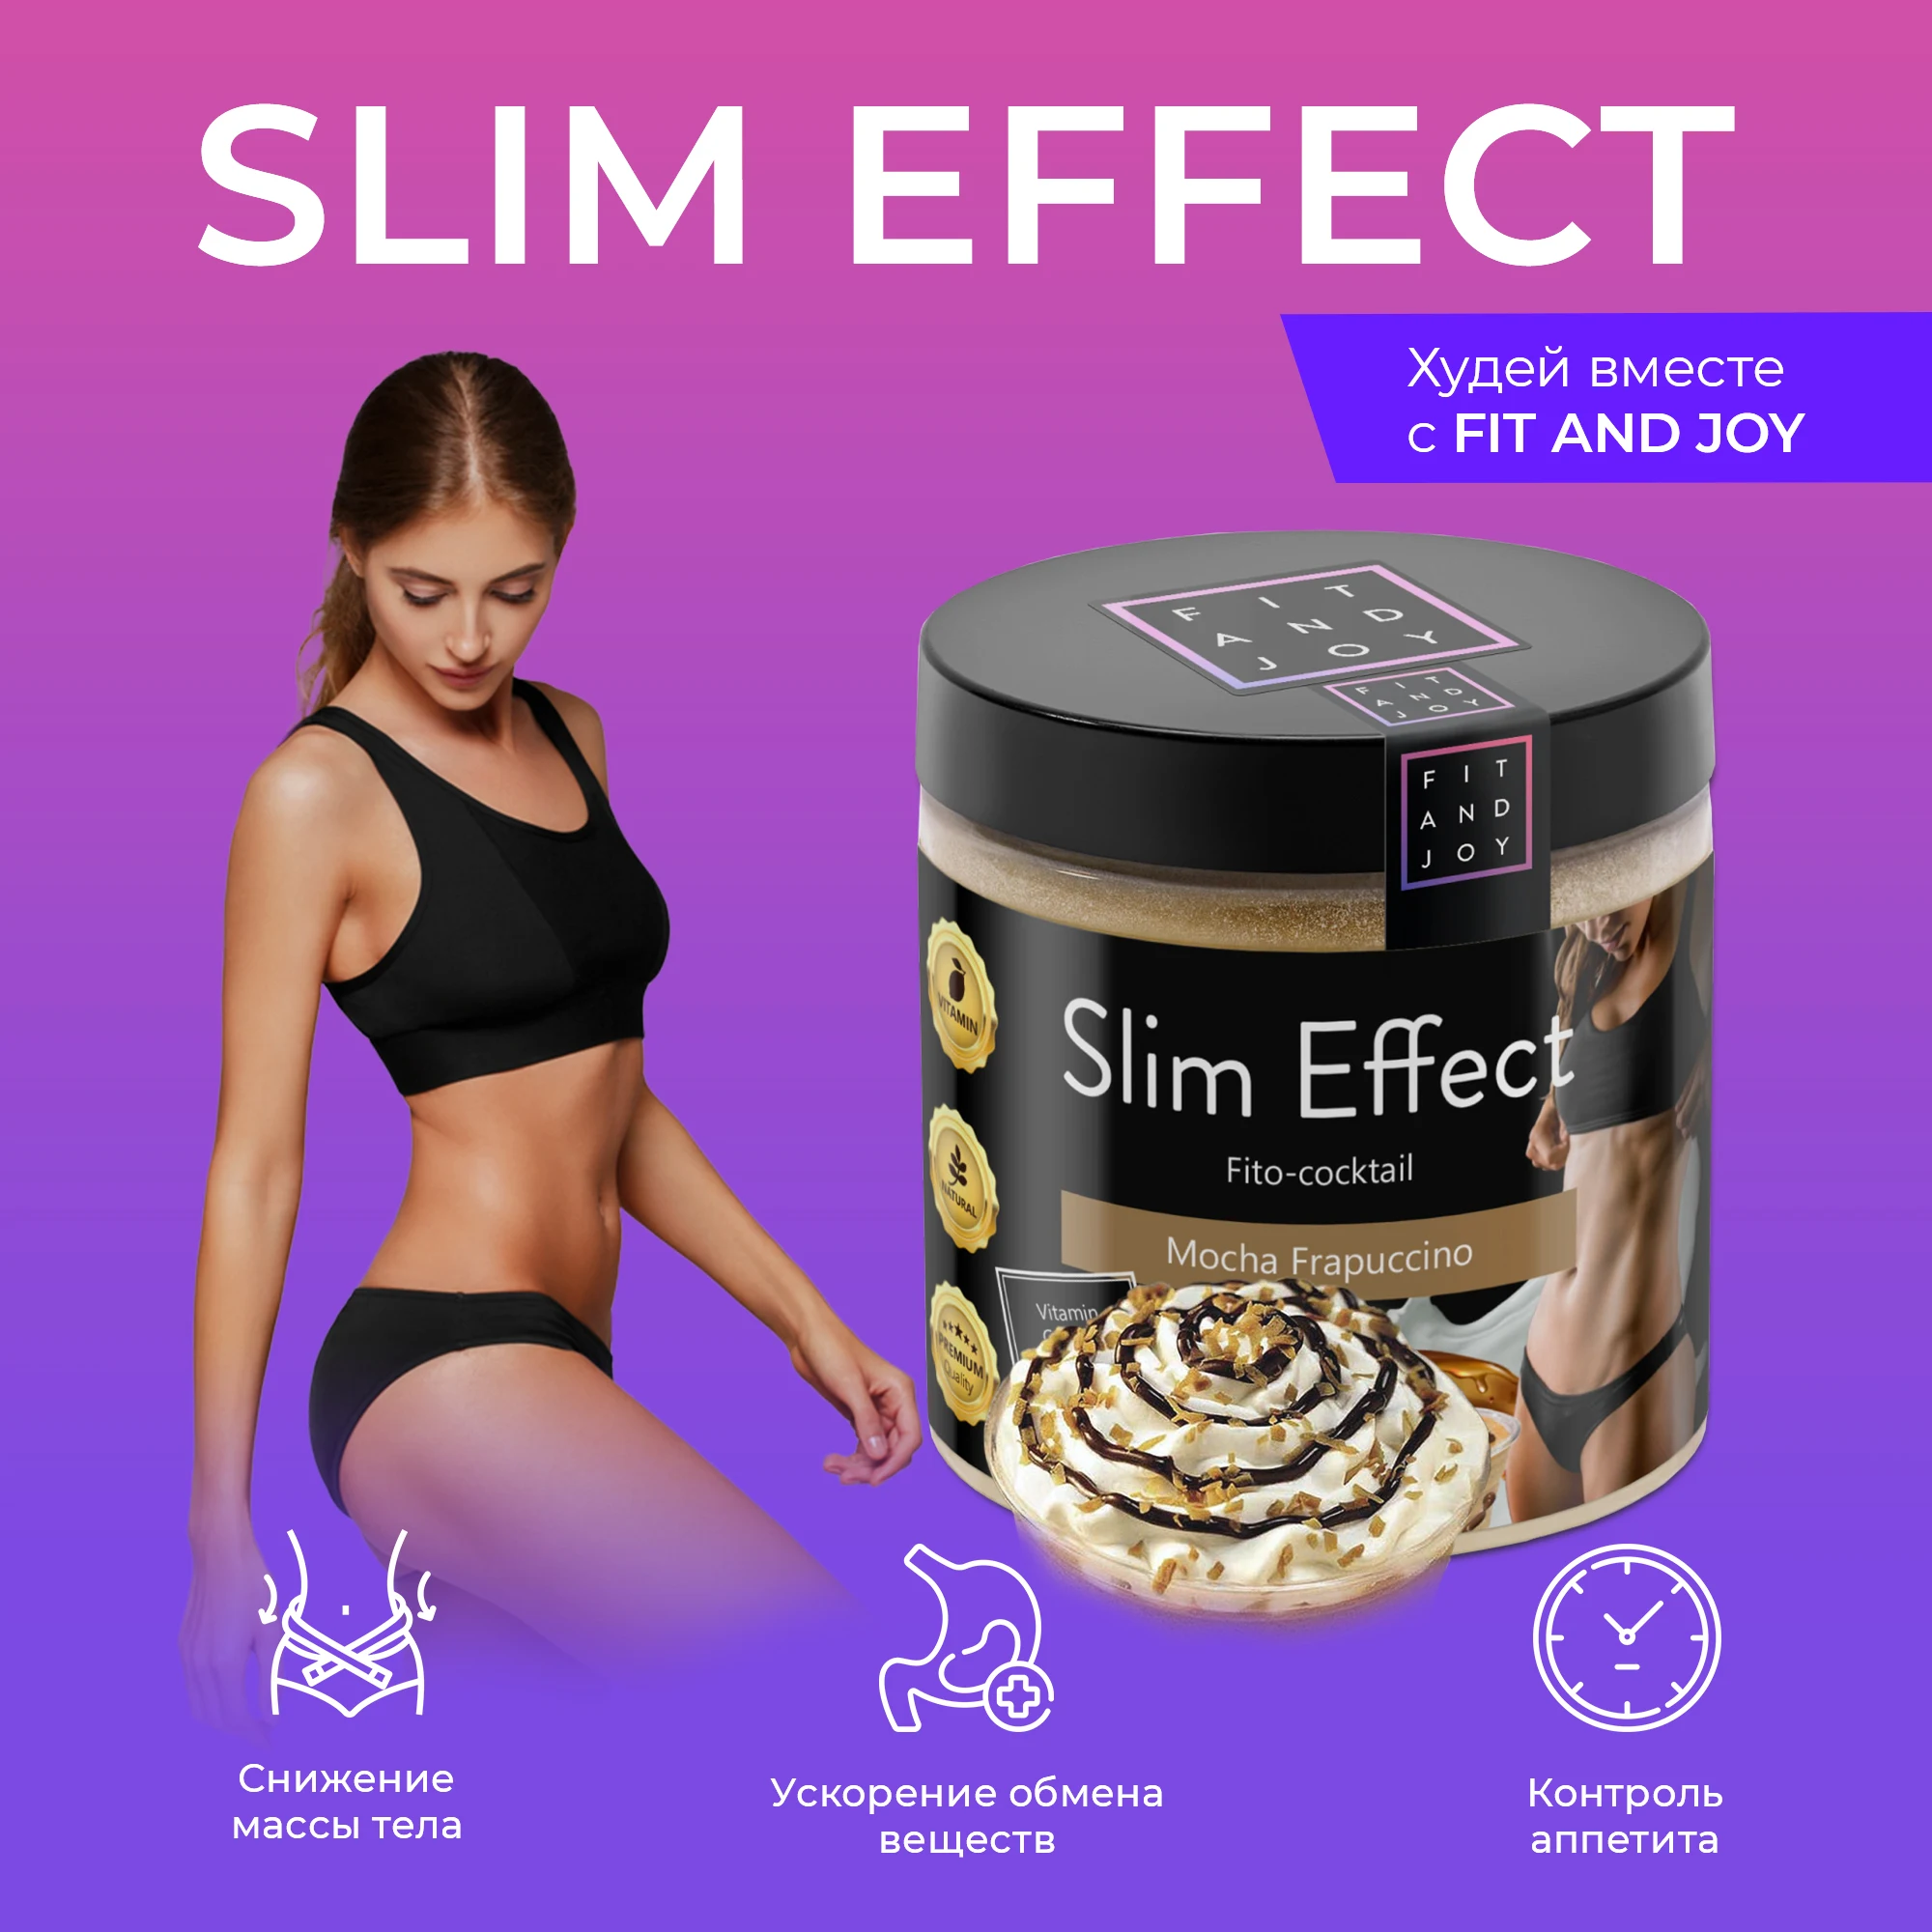 Коктейль для похудения Slim Effect. Эйвон коктейль для похудения. Body Box коктейль для похудения. Коктейль для похудения в пакетах.